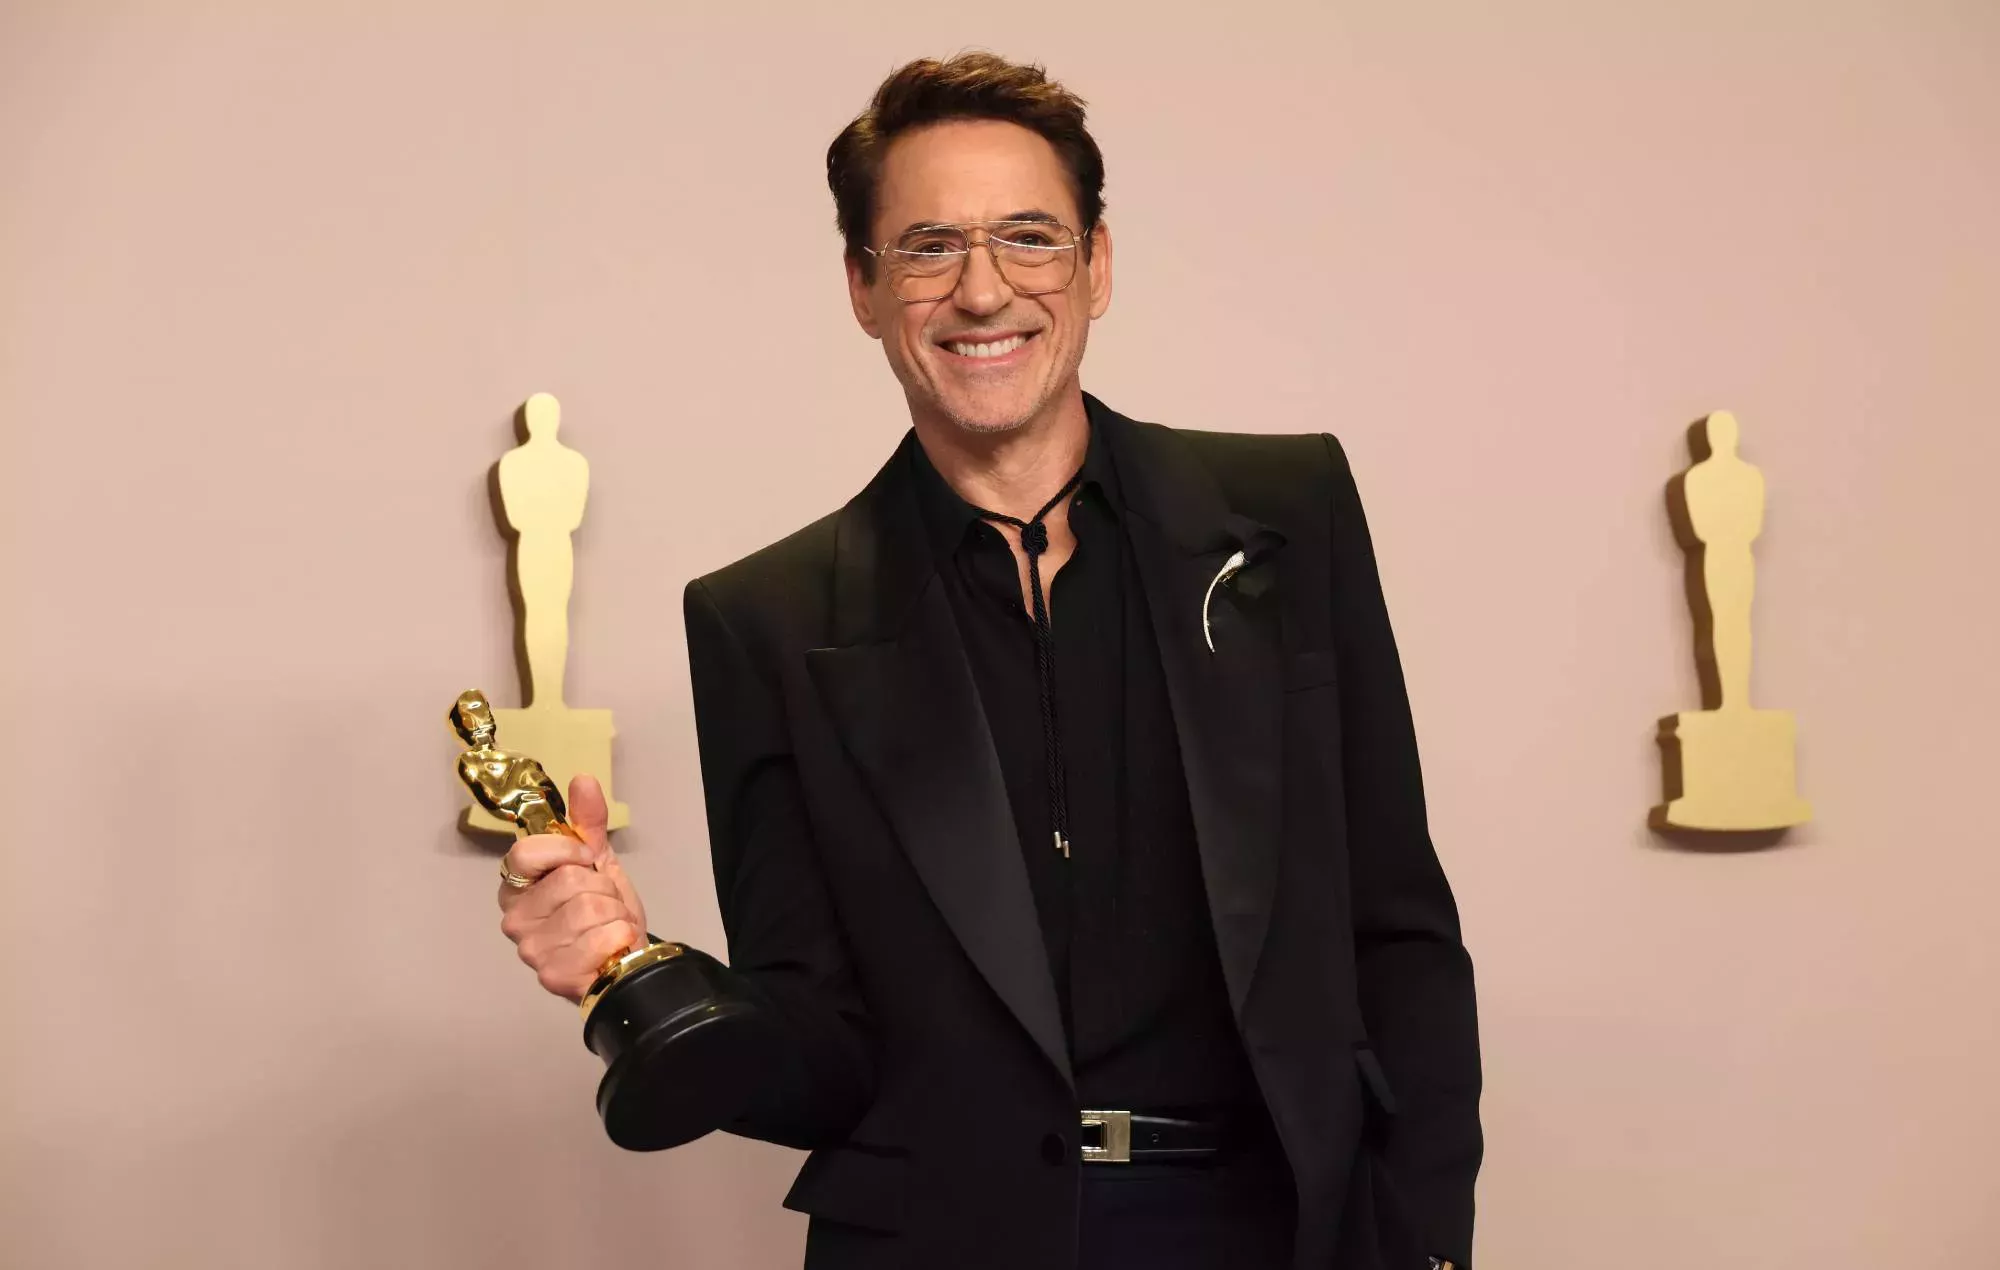 Robert Downey Jr. no pareció contento con la broma de Jimmy Kimmel sobre las drogas durante su discurso en los Oscars